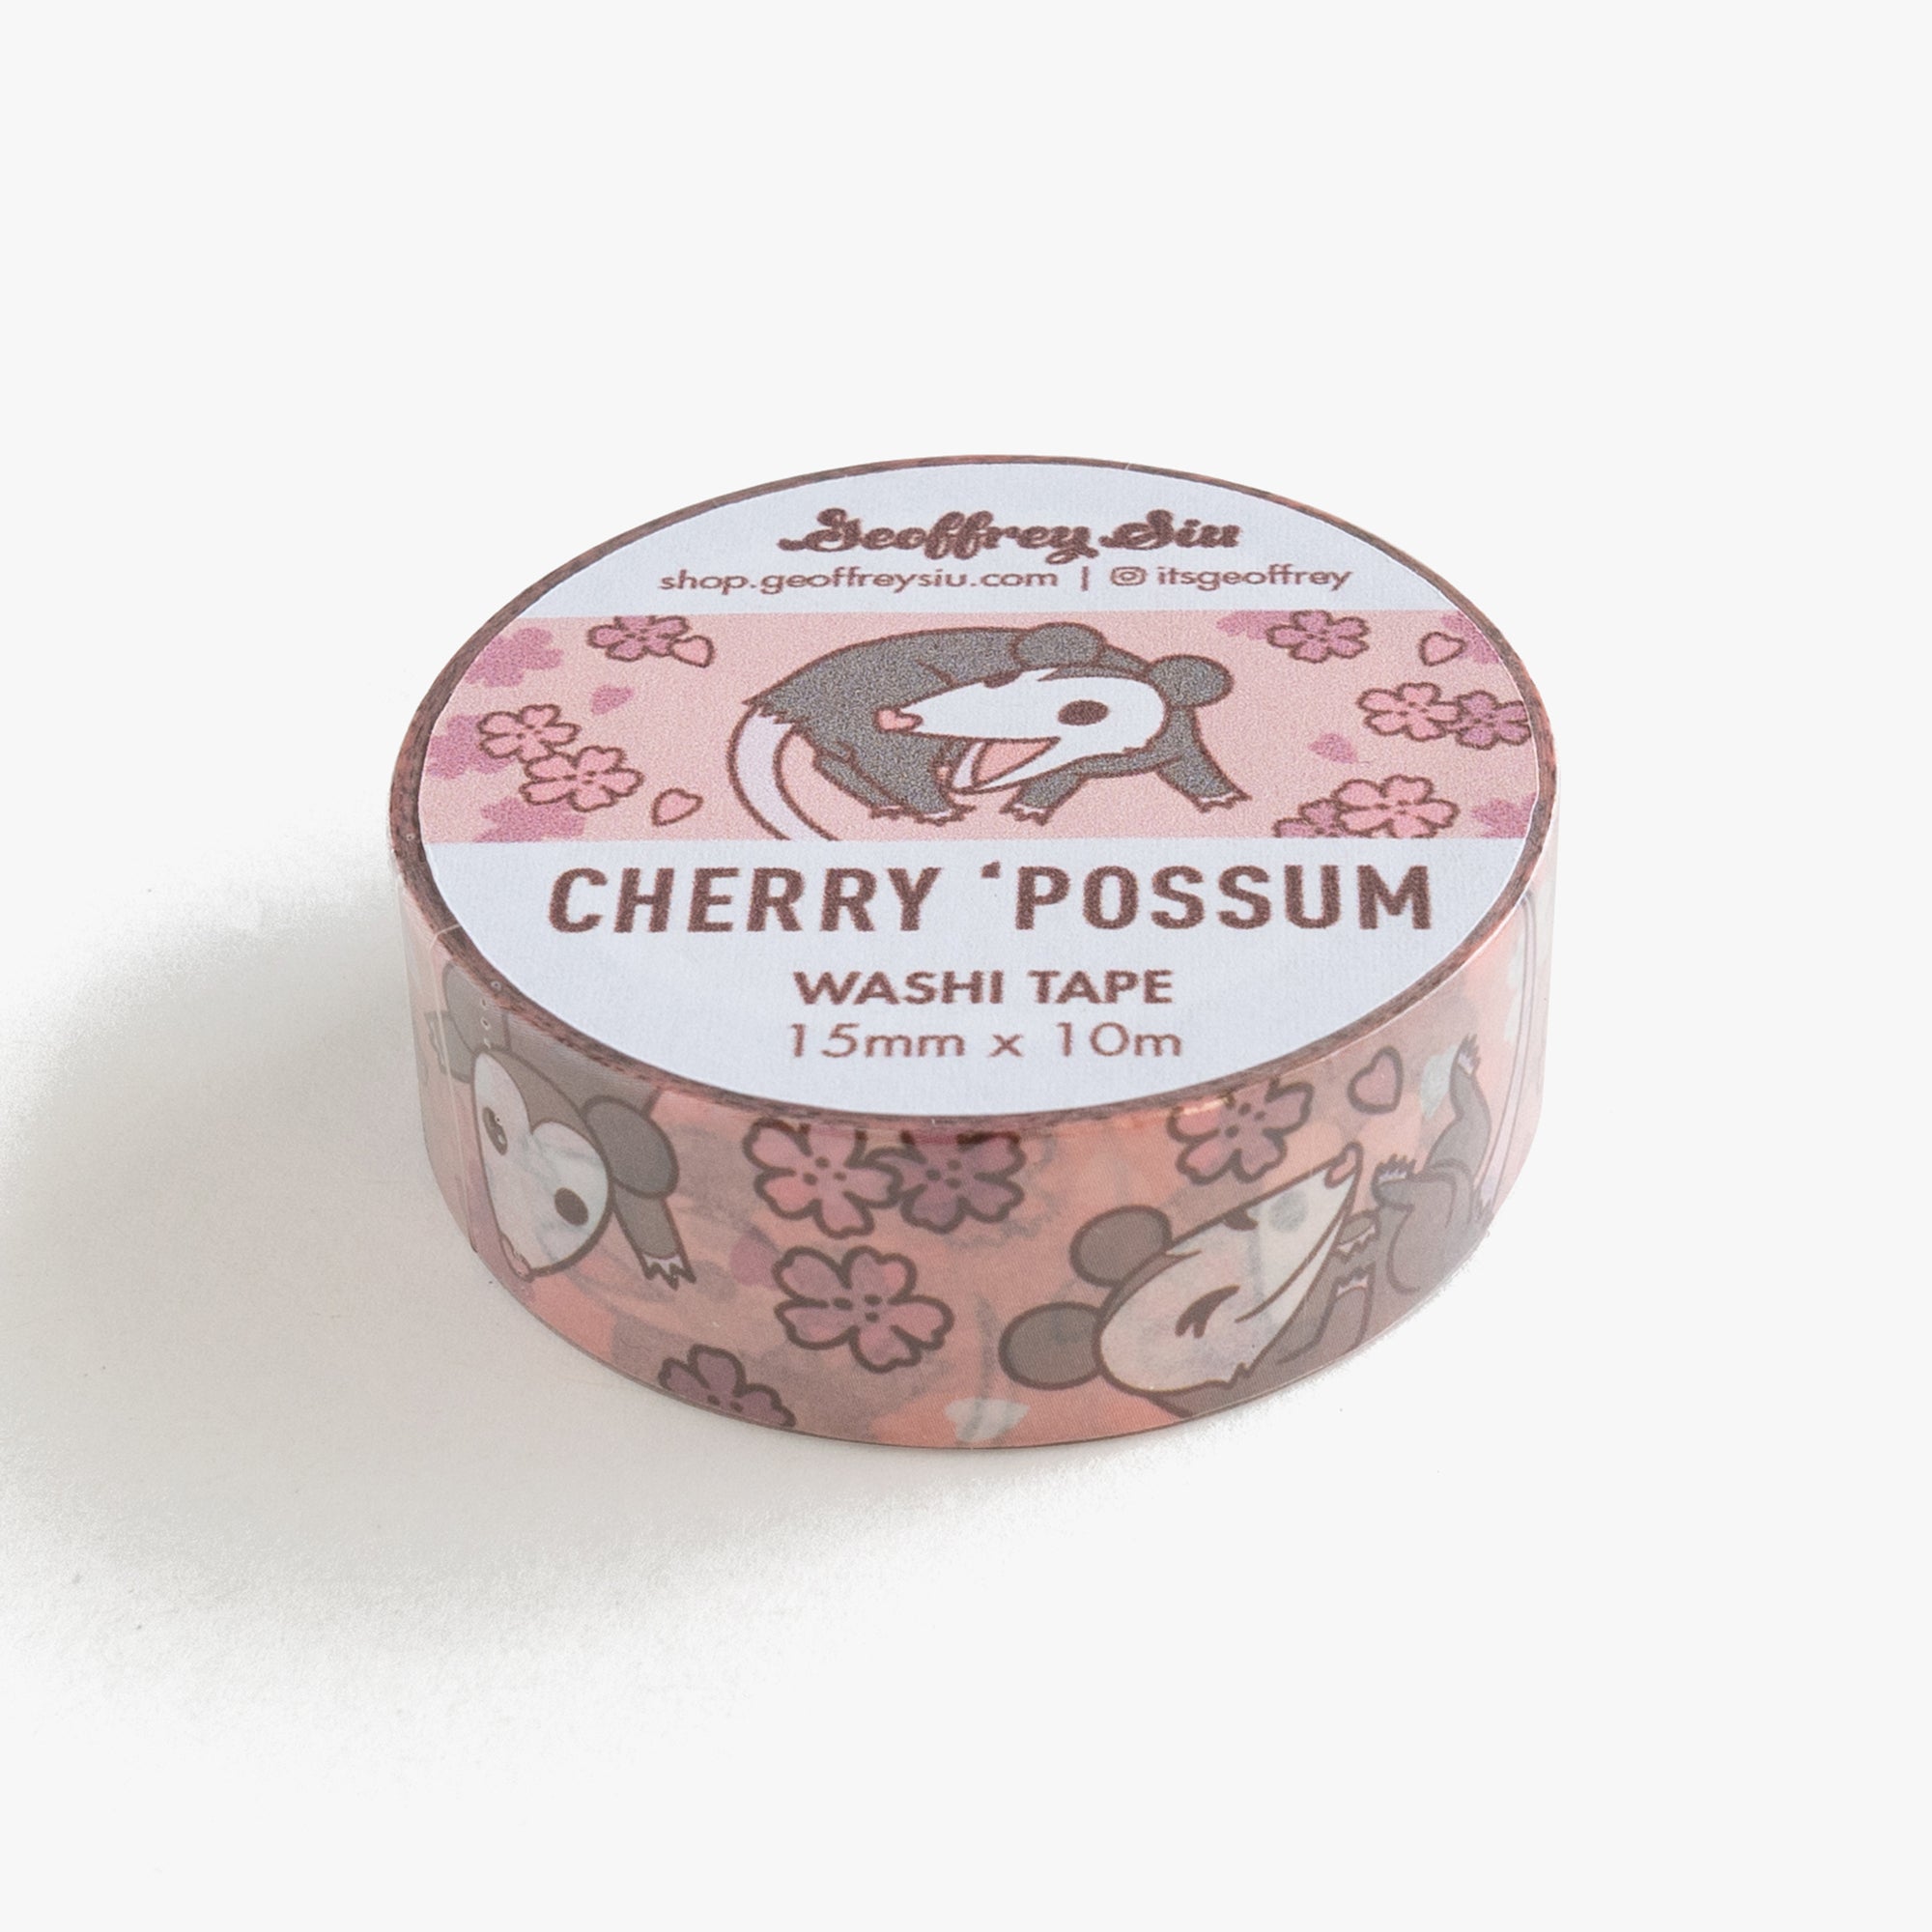 Cherry 'Possum Washi Tape